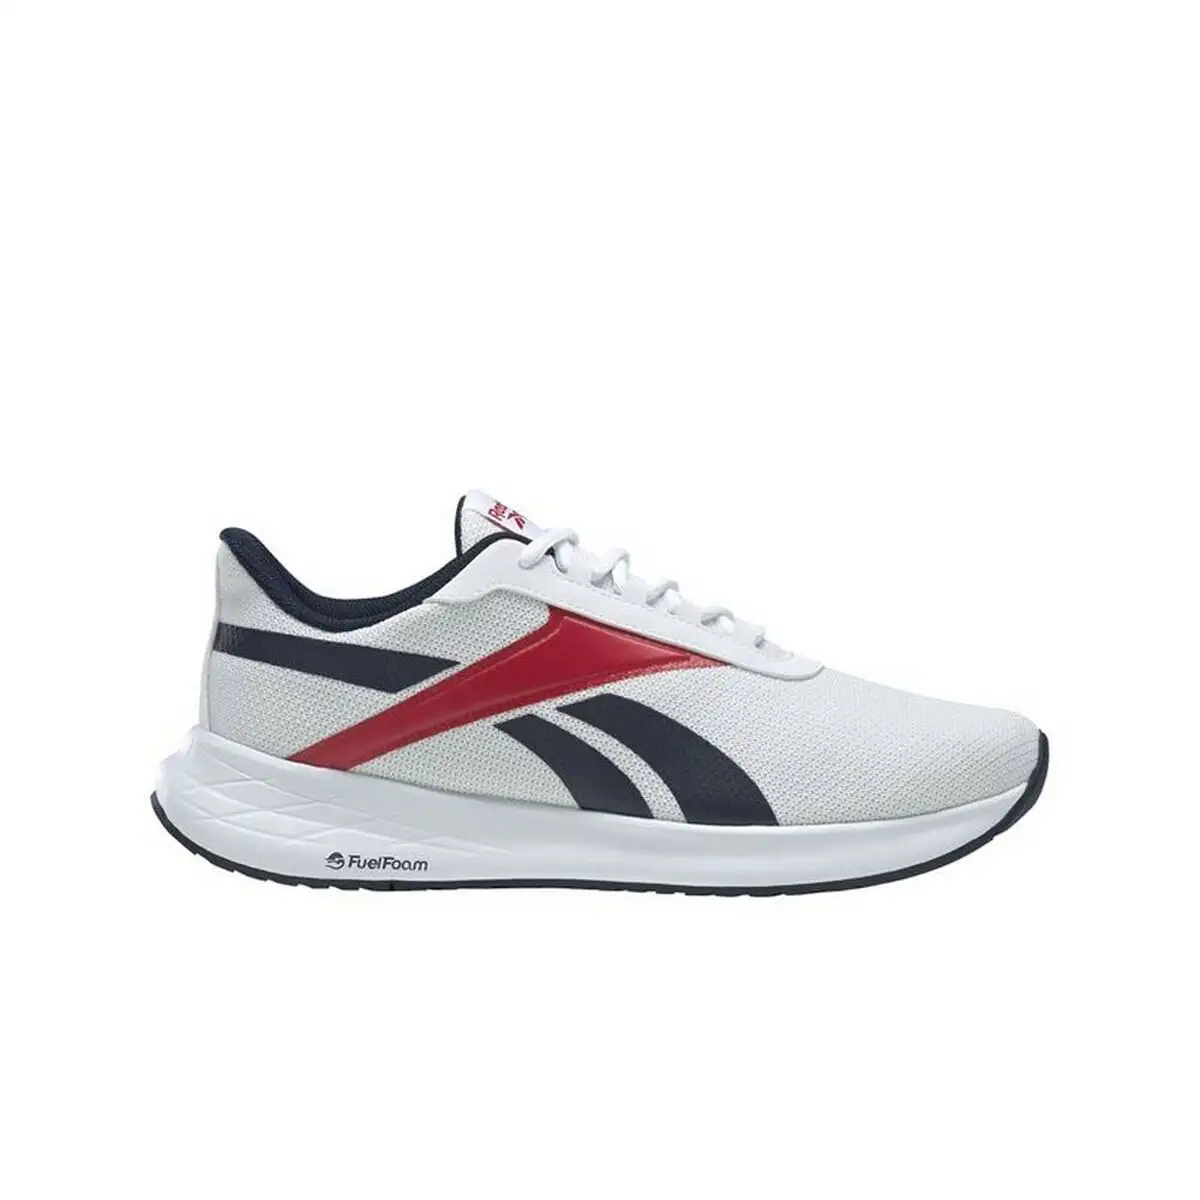 Chaussures de running pour adultes reebok energen plus blanc_8312. DIAYTAR SENEGAL - Où Choisir est un Plaisir. Explorez notre boutique en ligne et choisissez parmi des produits de qualité qui satisferont vos besoins et vos goûts.